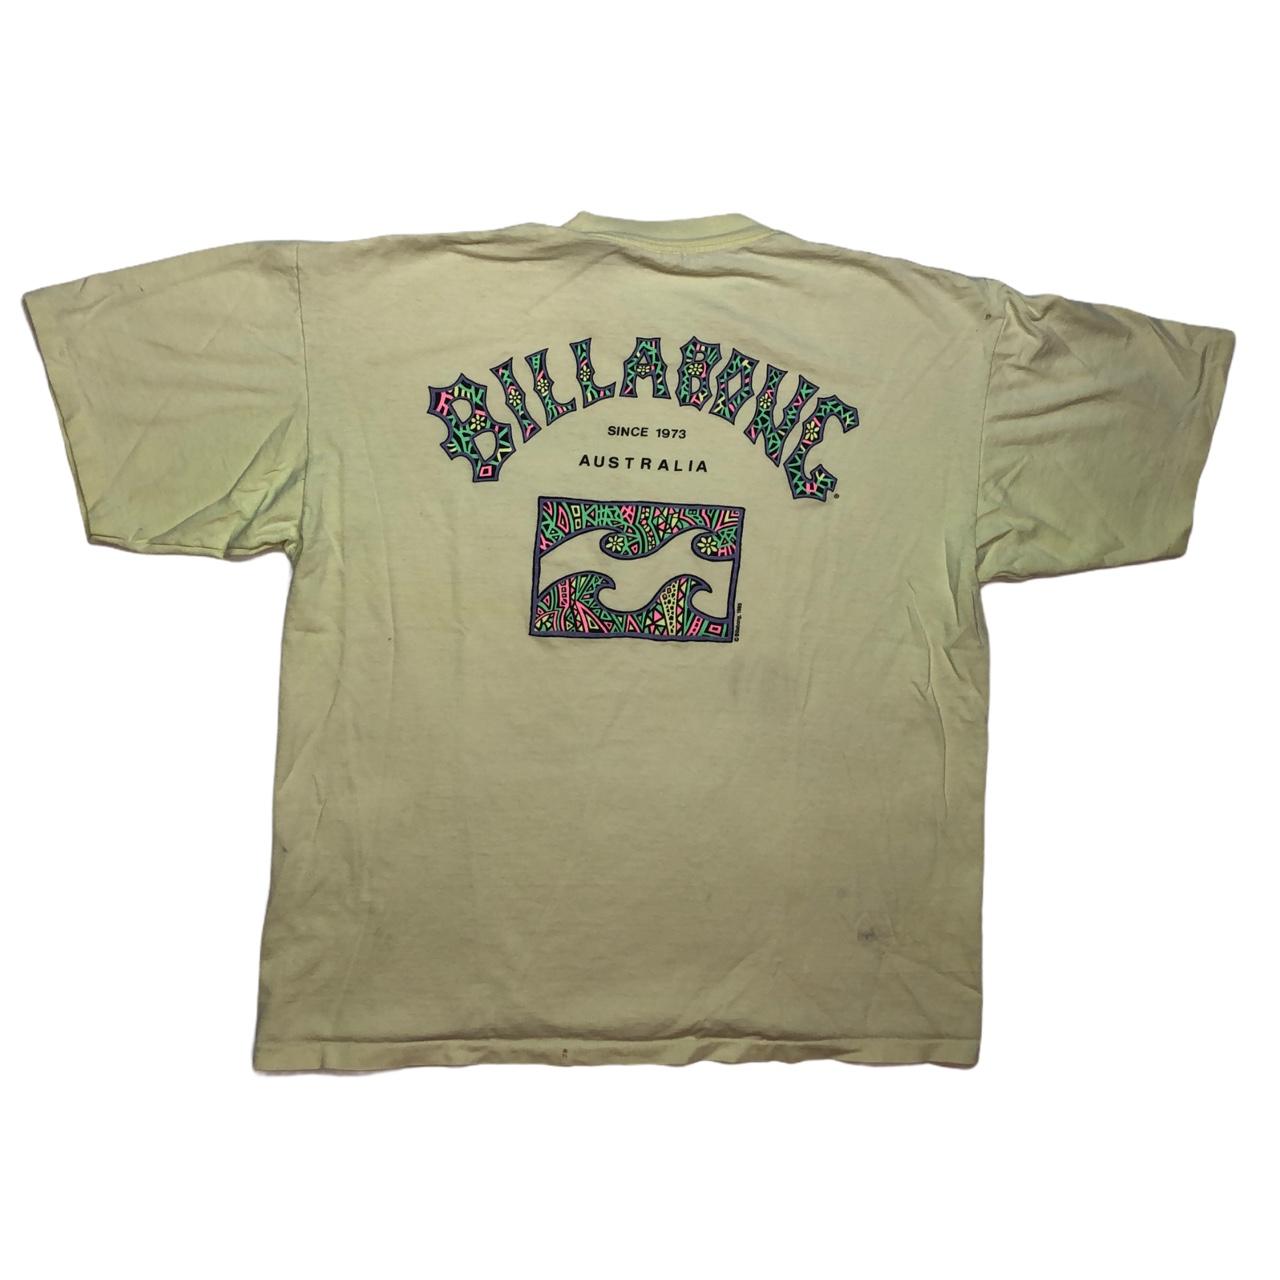 Vintage 80s Billabong Australia Surf T-shirt Size:... - Depop